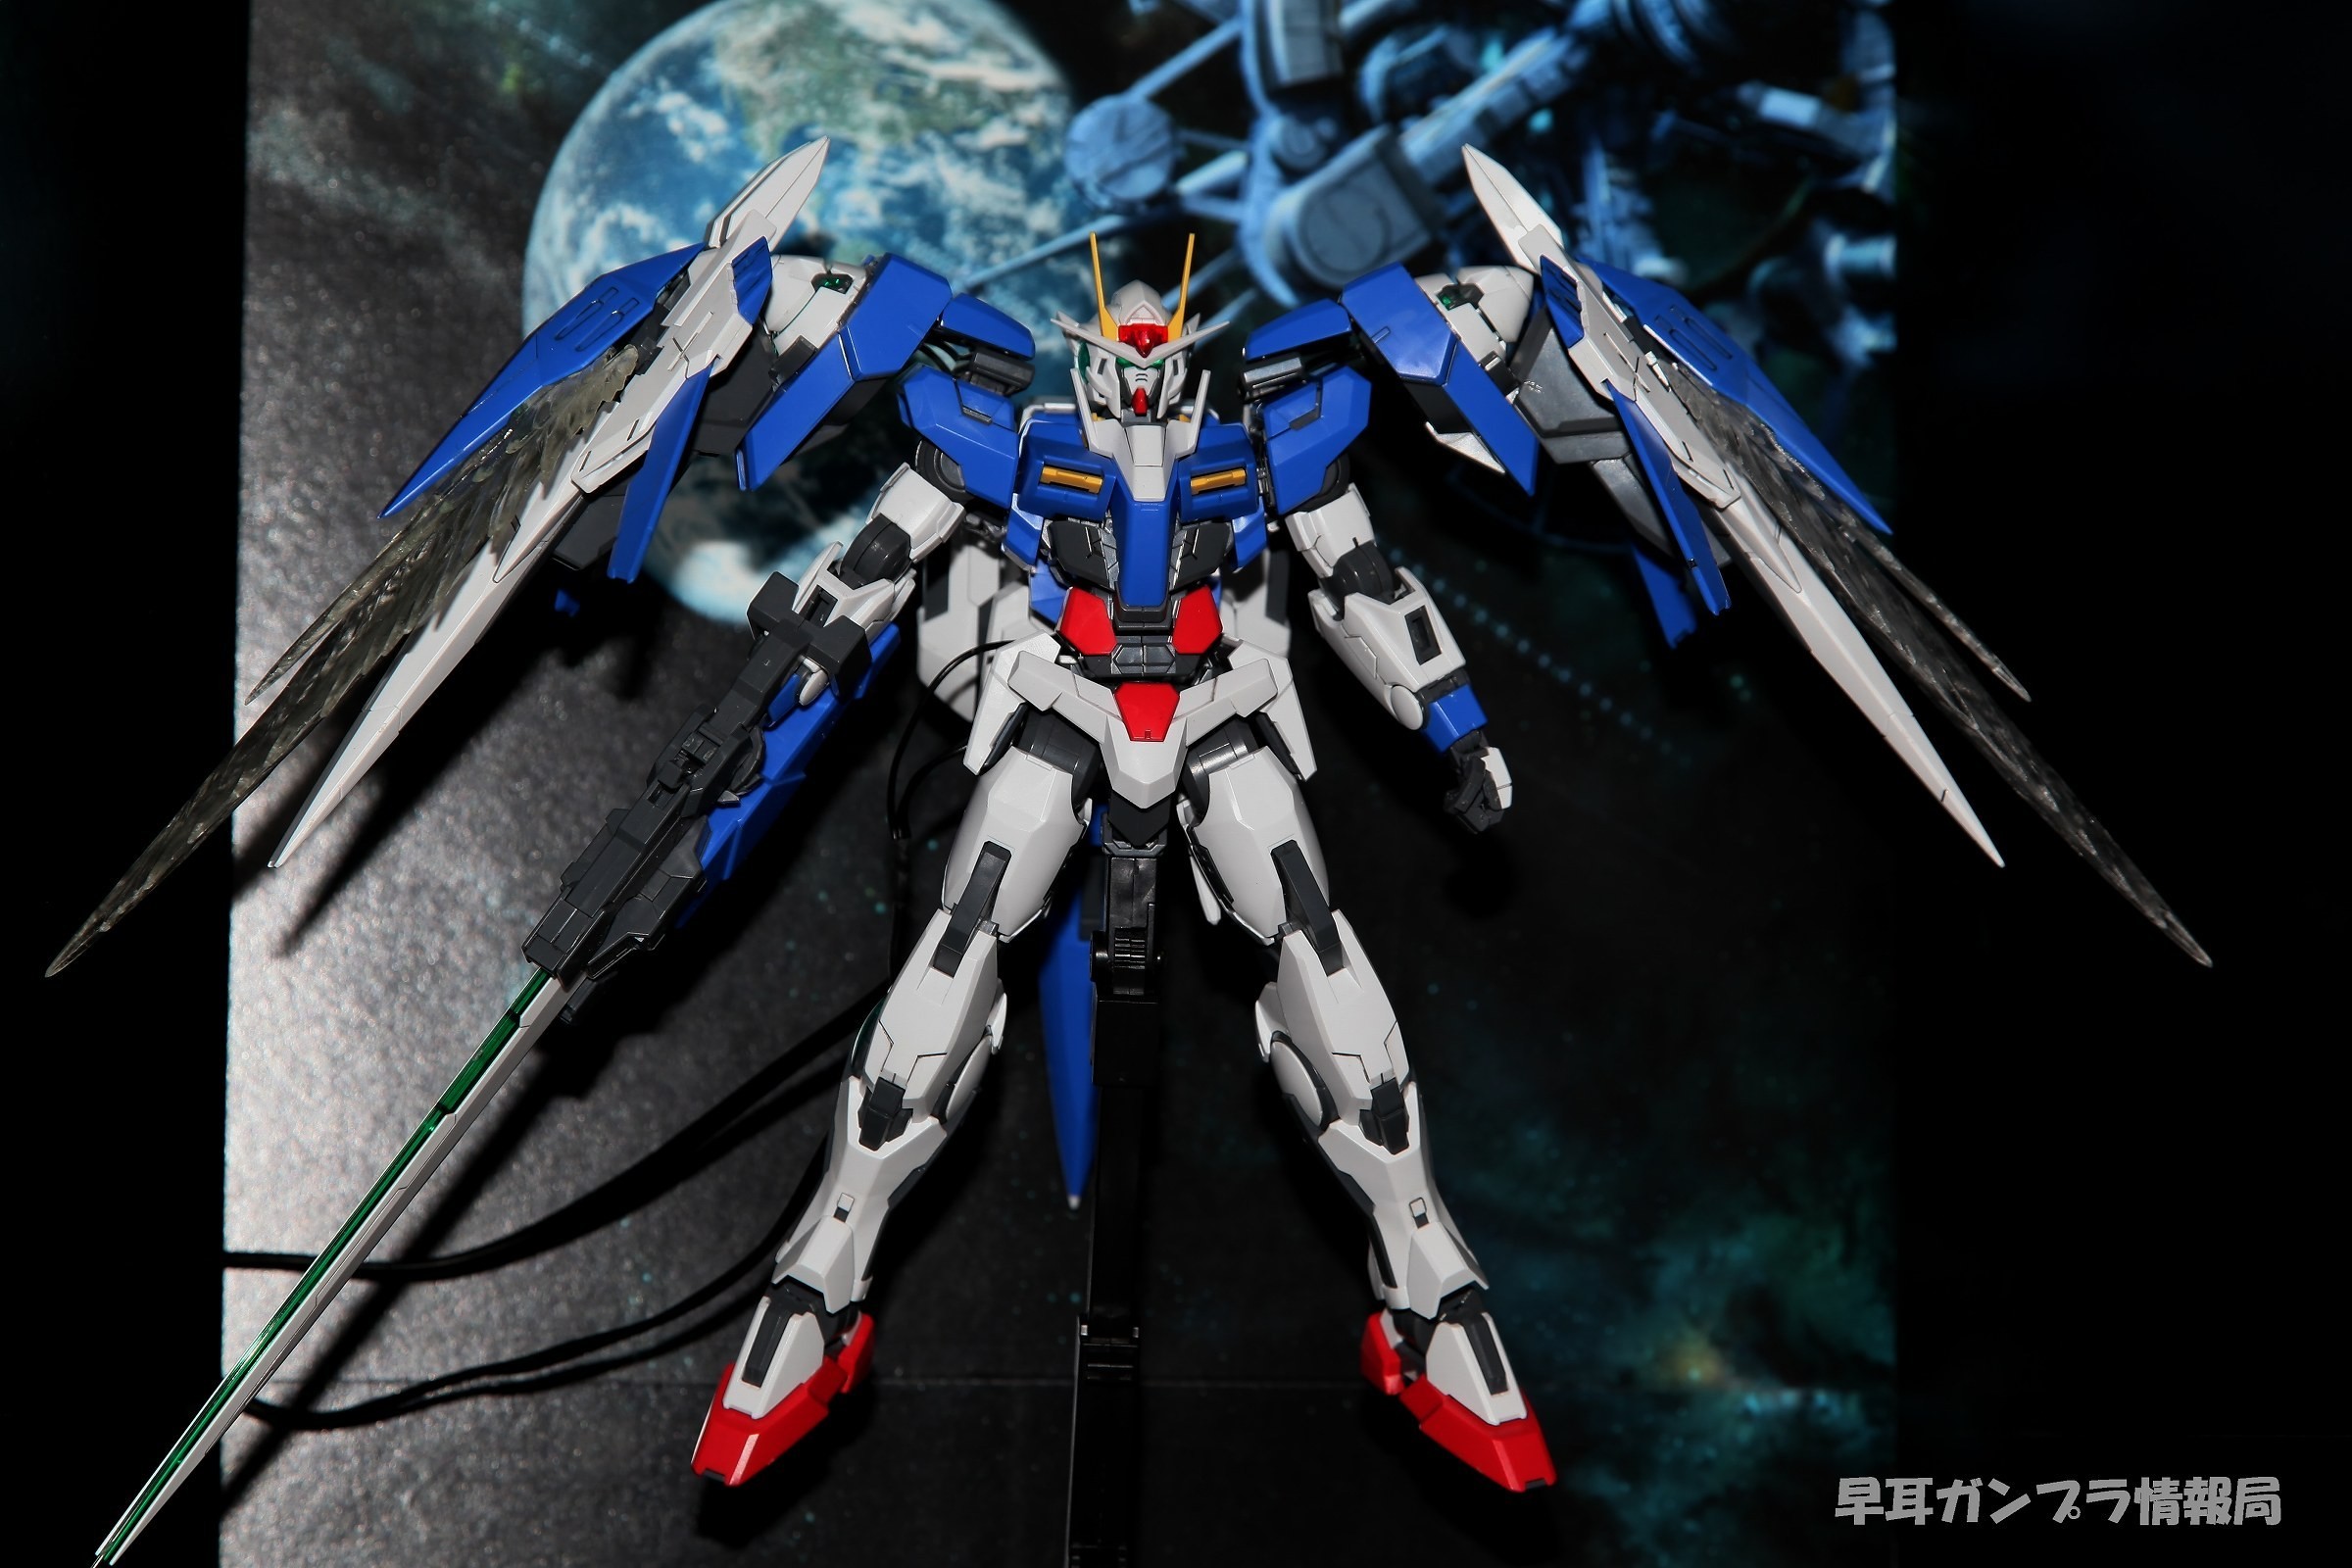 2400x1600 Gundam 00 Raiser Wallpaper